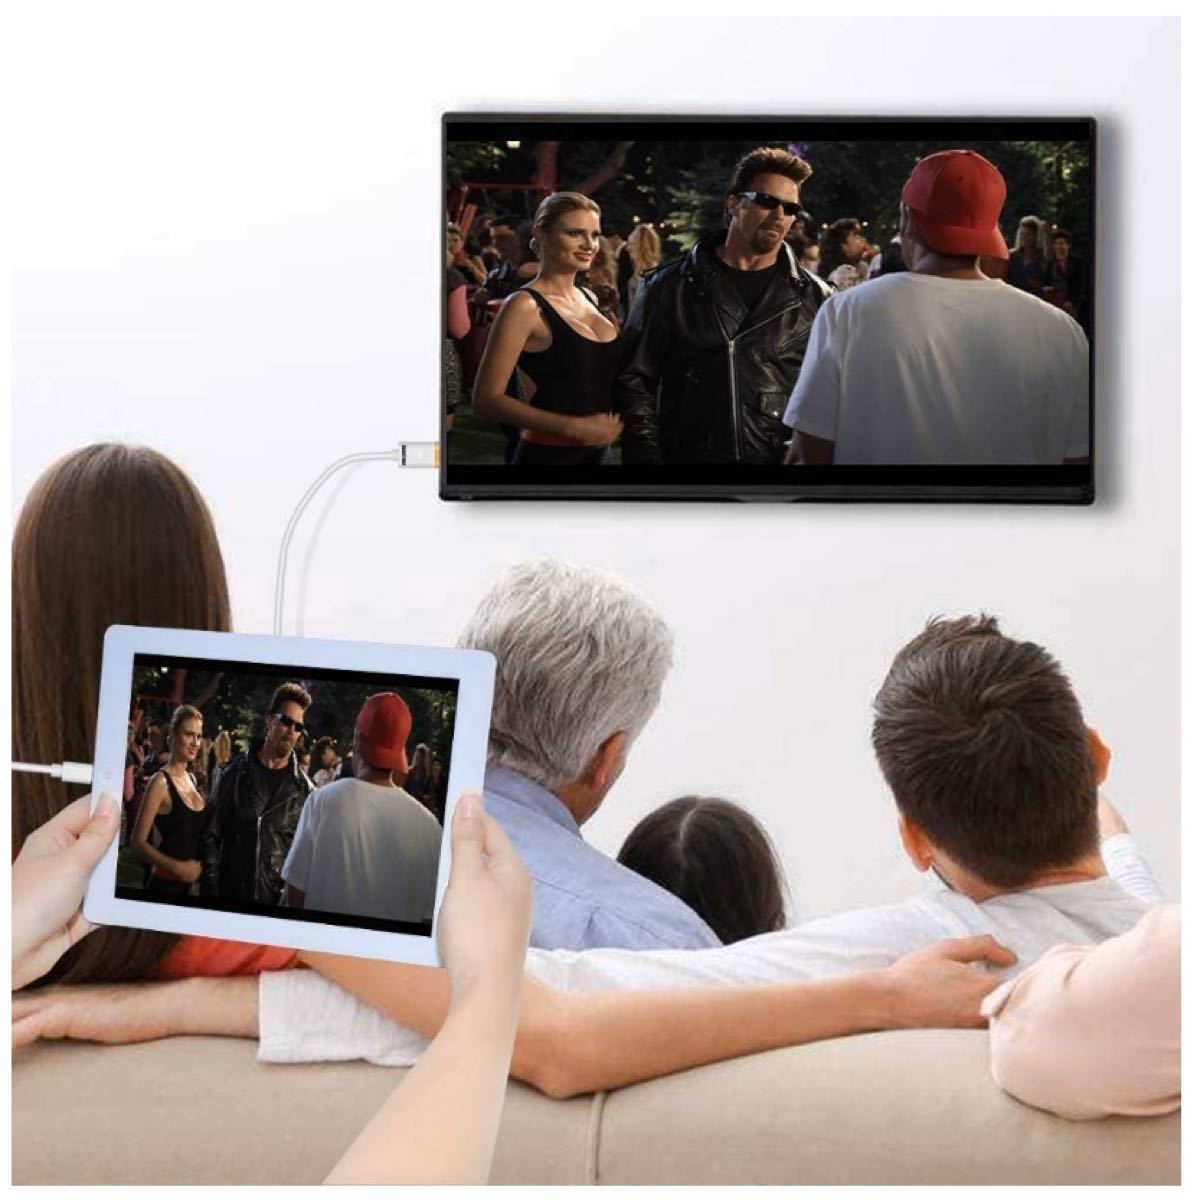 【新品・送料無料】iPhone HDMI変換ケーブル テレビ変換ケーブル 1080P高解像度 操作簡単 iPhone/iPad